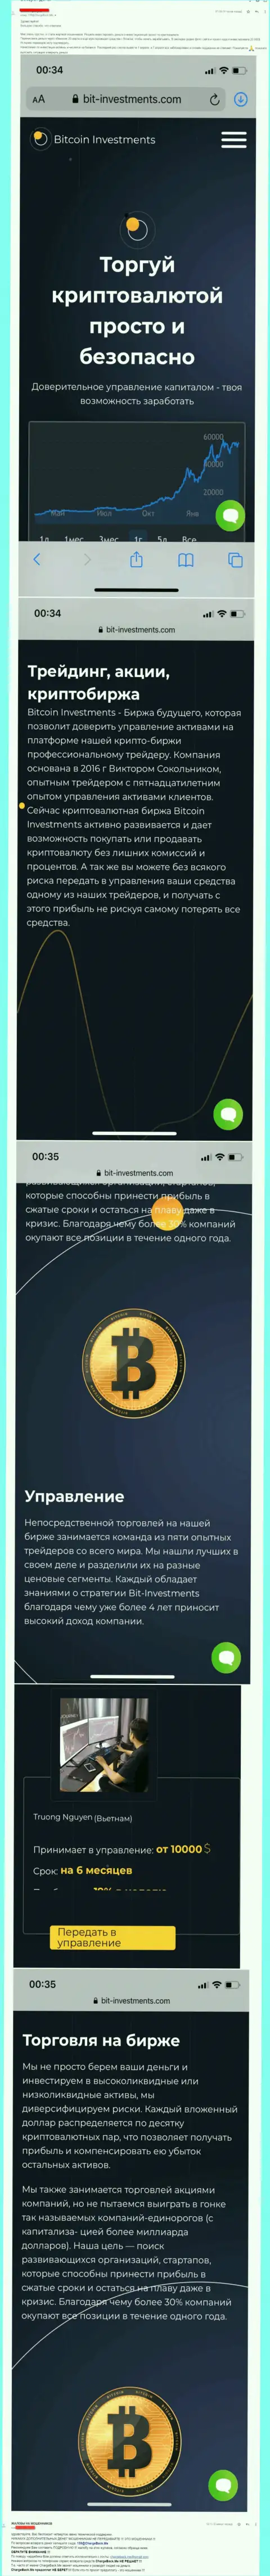 Бегите от компании Bitcoin Investments подальше, украдут вложенные деньги !!! (отзыв)